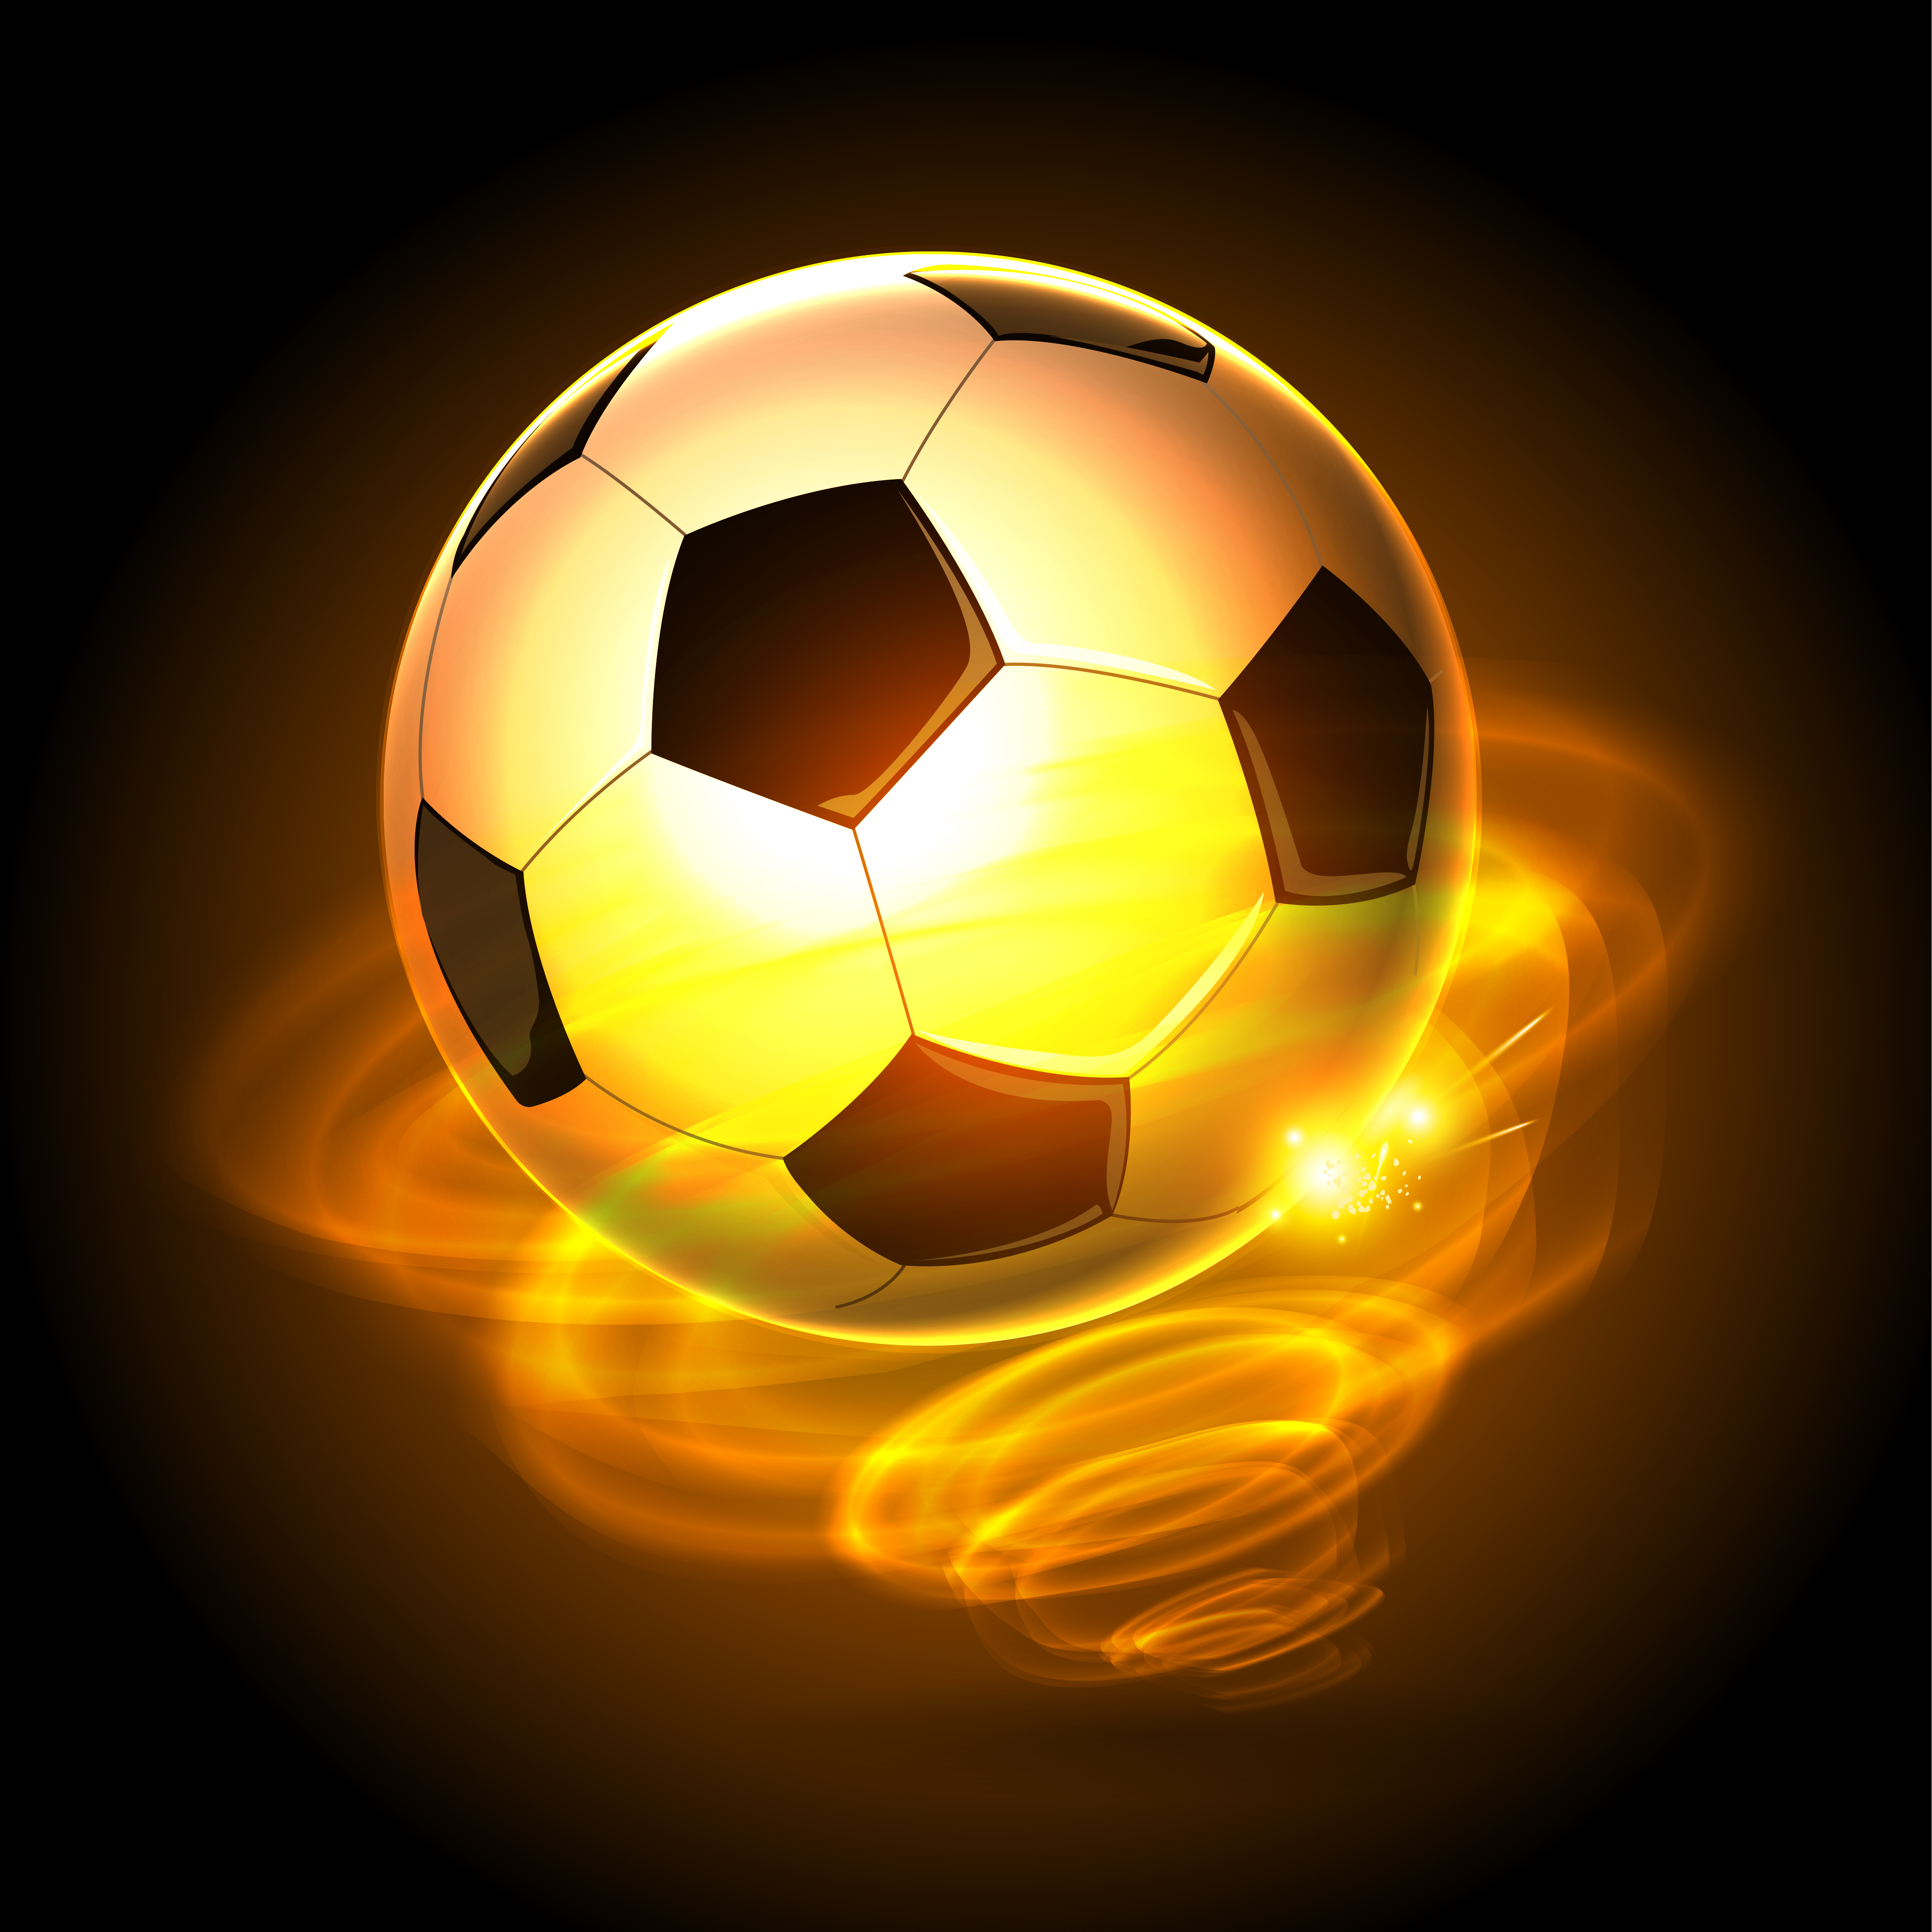 Feuer-Zyklon-Fußball - Download Kostenlos Vector, Clipart ...